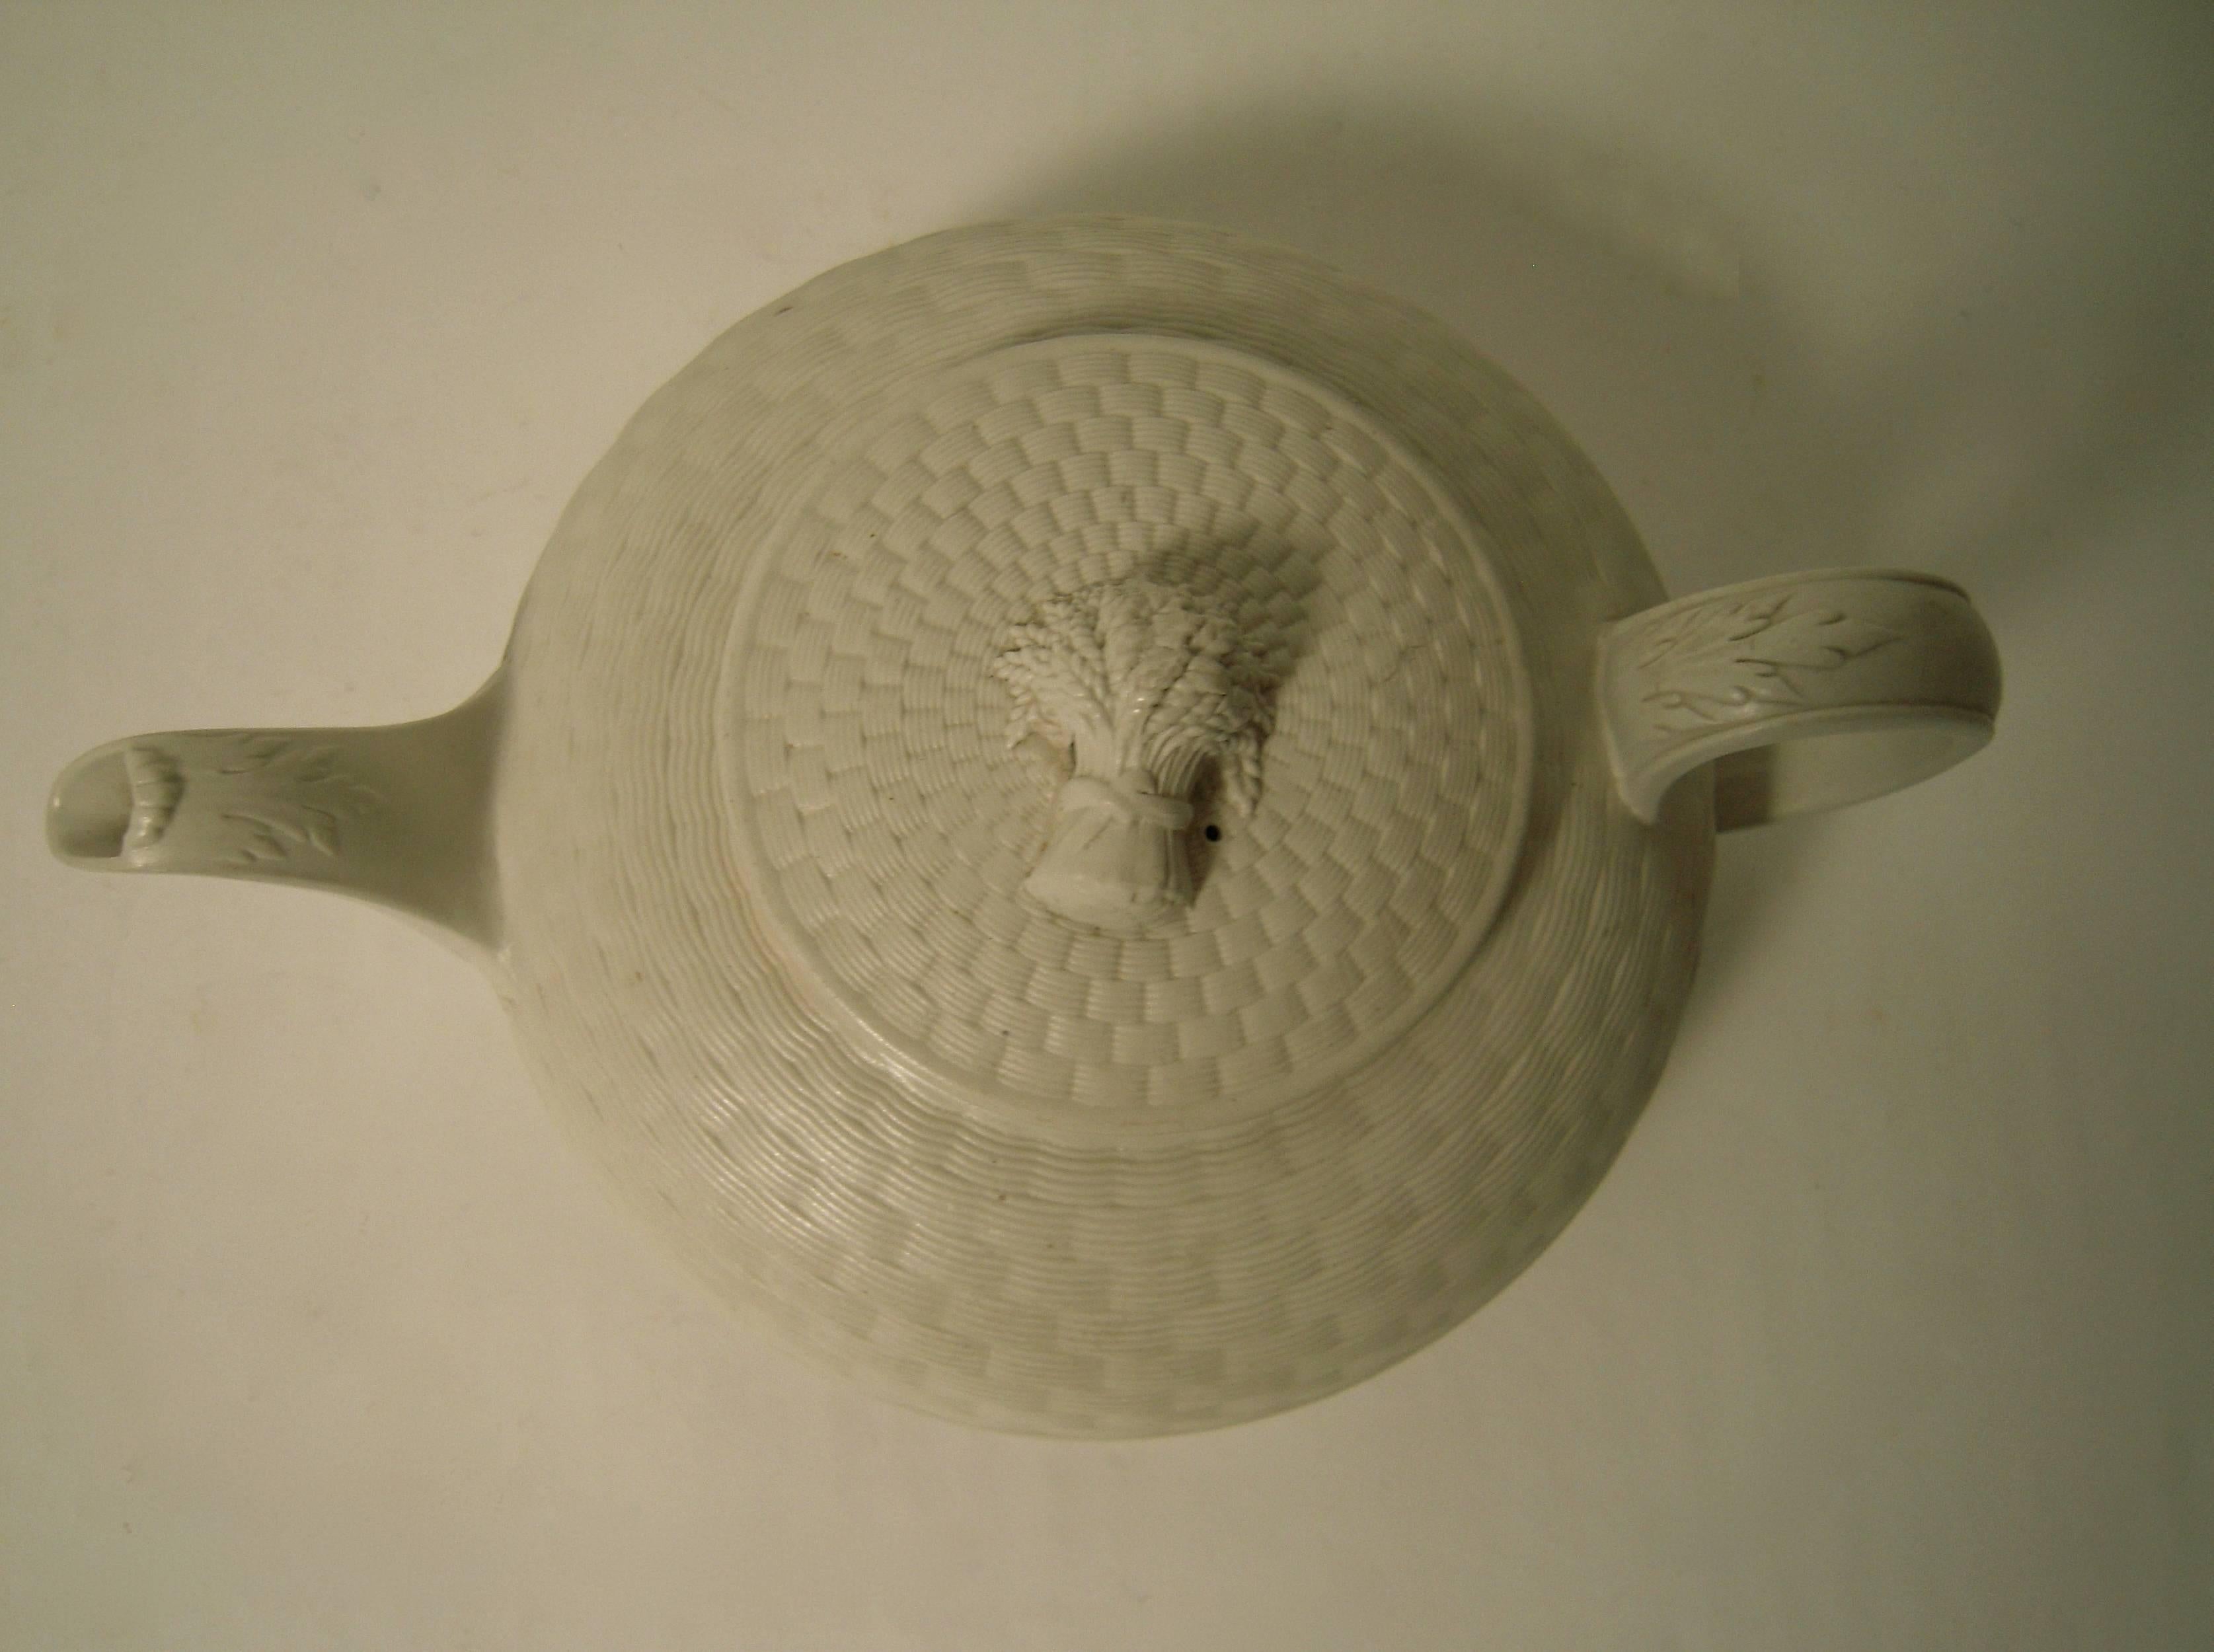 stoneware tea kettle